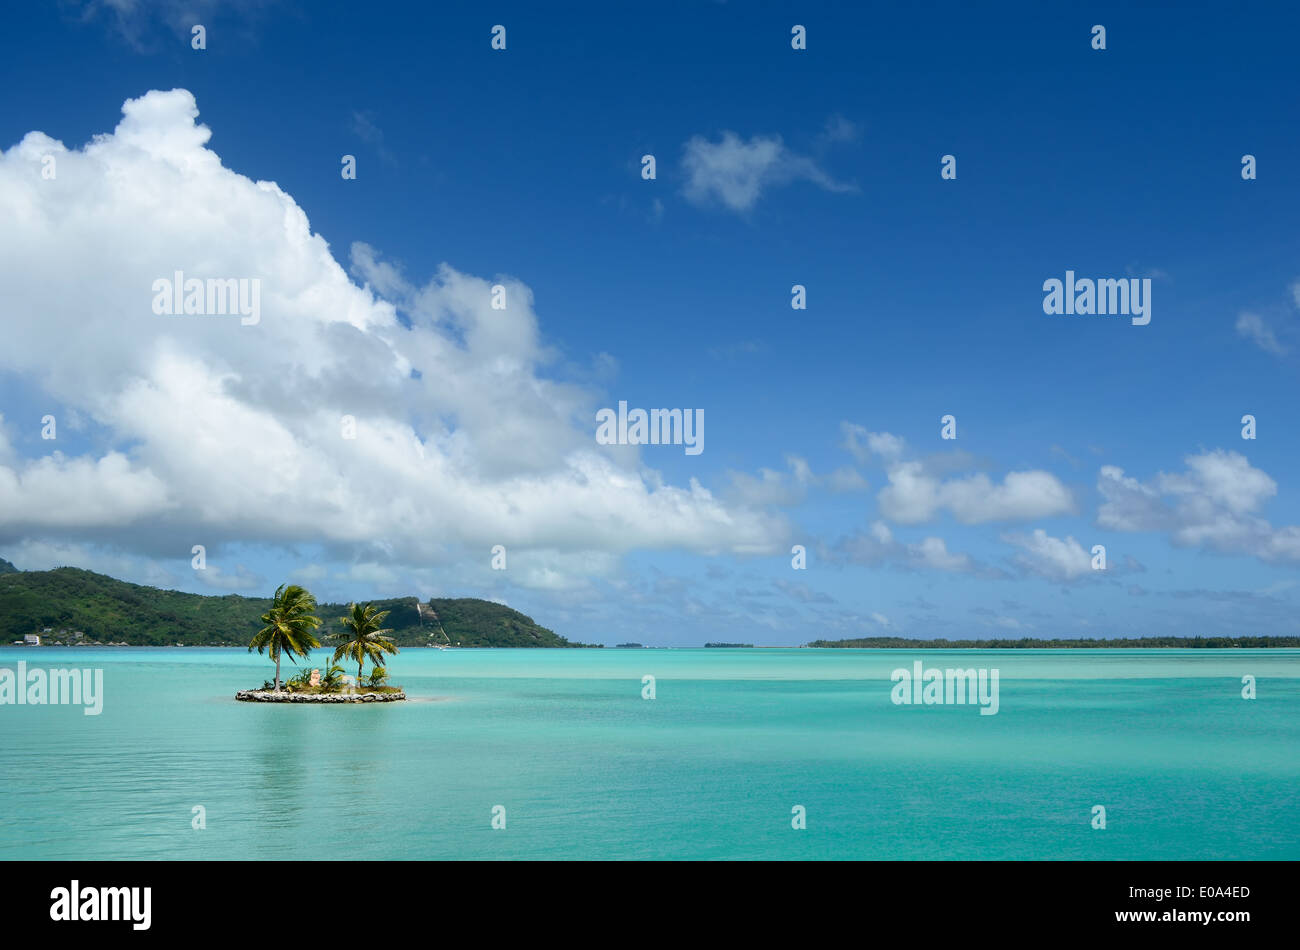 Petite île avec des cocotiers dans l'eau claire du lagon bleu de Bora Bora, près de Tahiti en Polynésie française. Banque D'Images